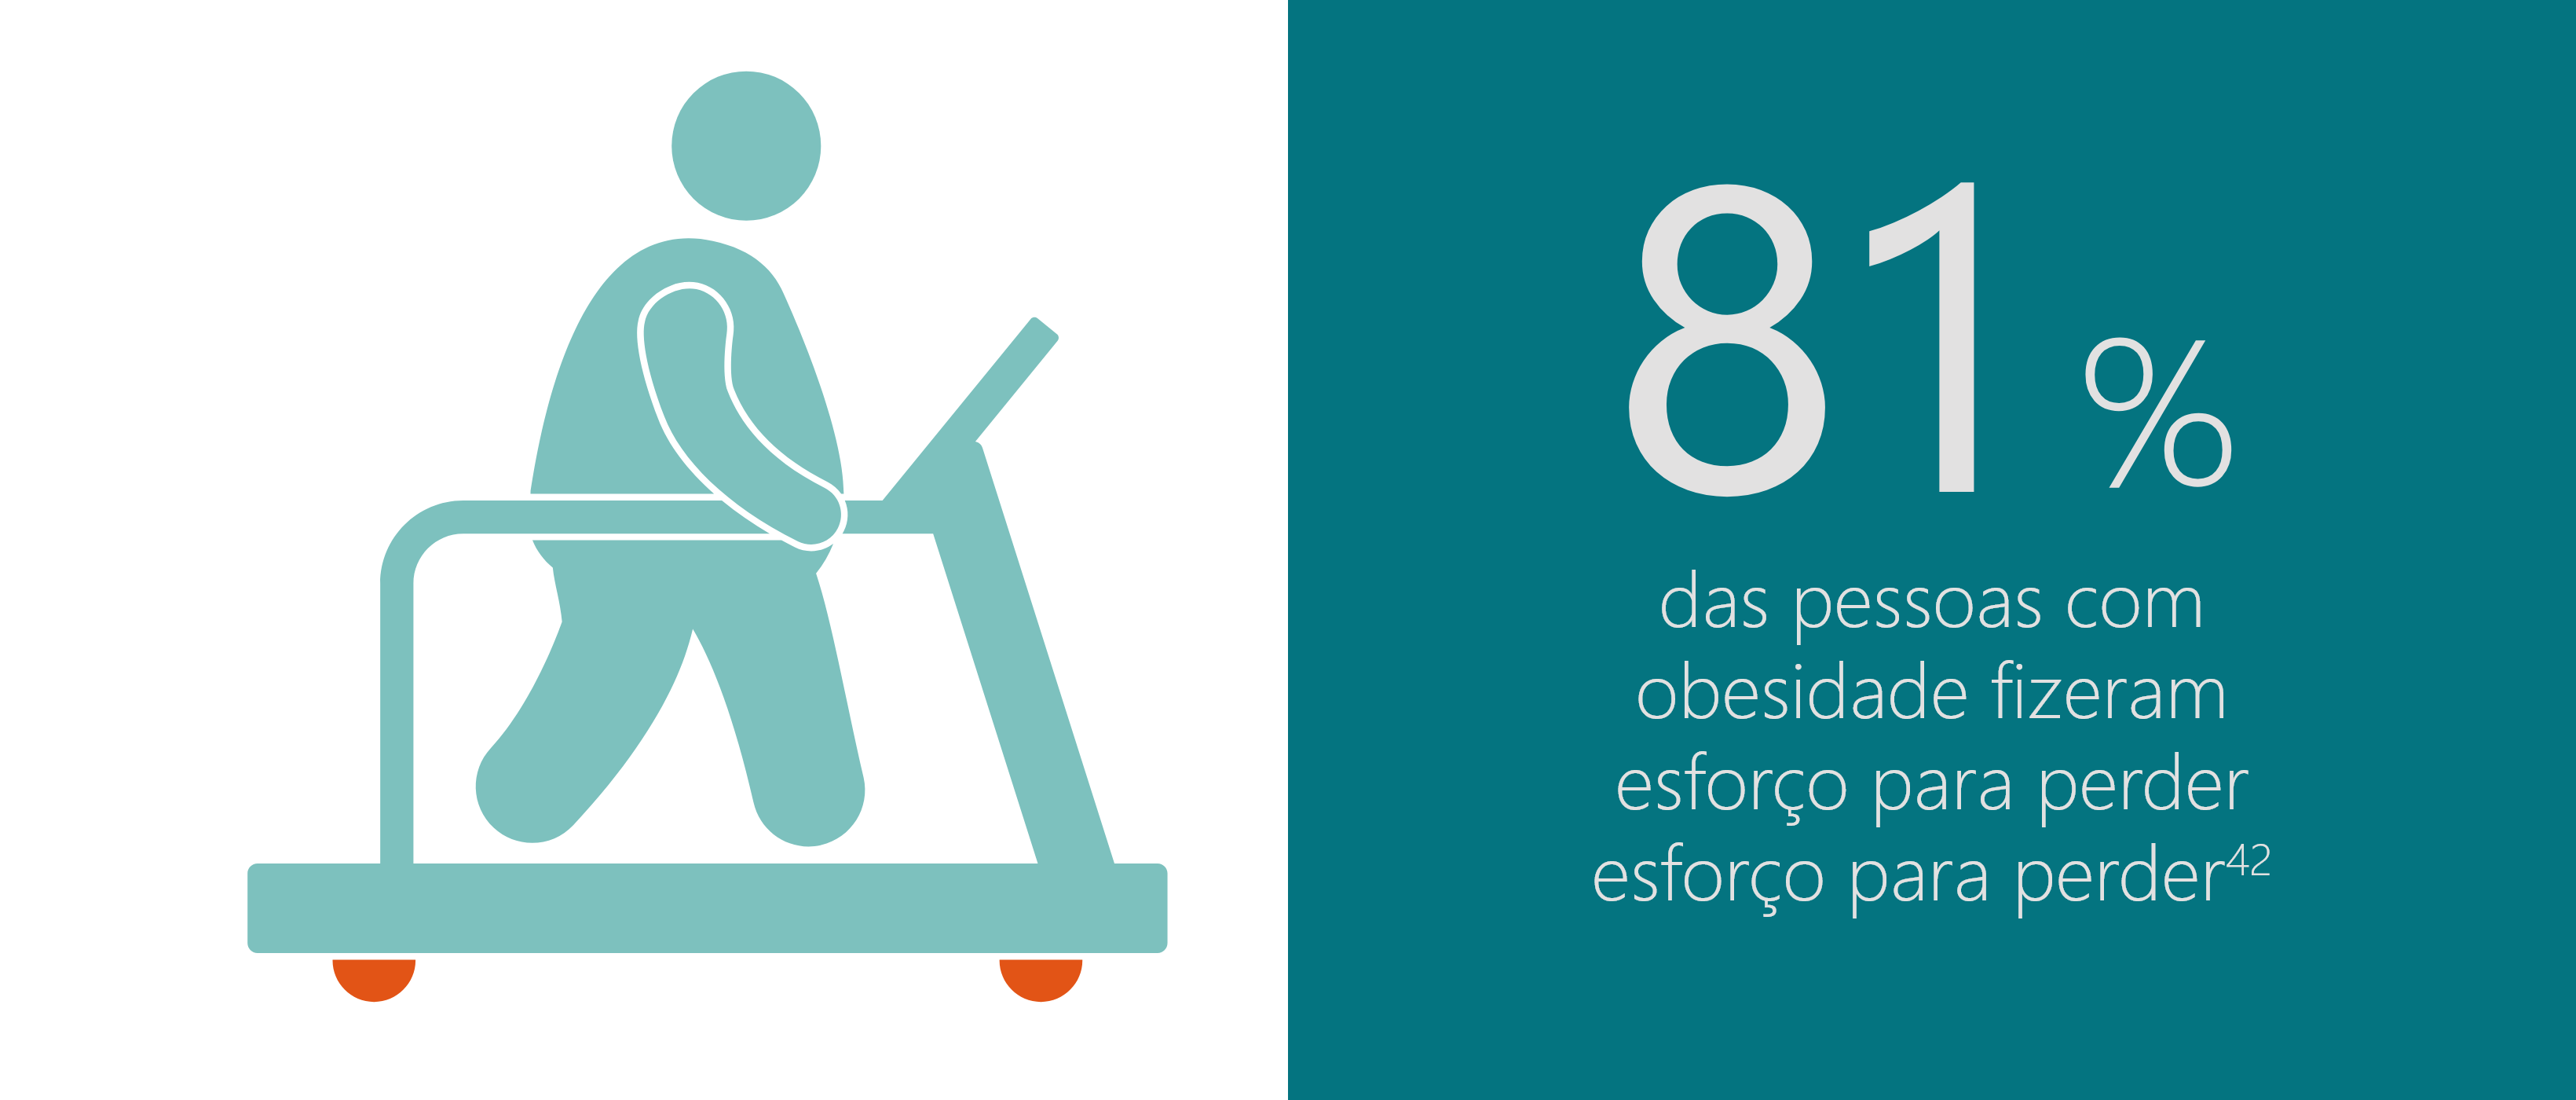 Porcentagem de profissionais da saúde que acreditam que pessoas obesas não querem perder peso.